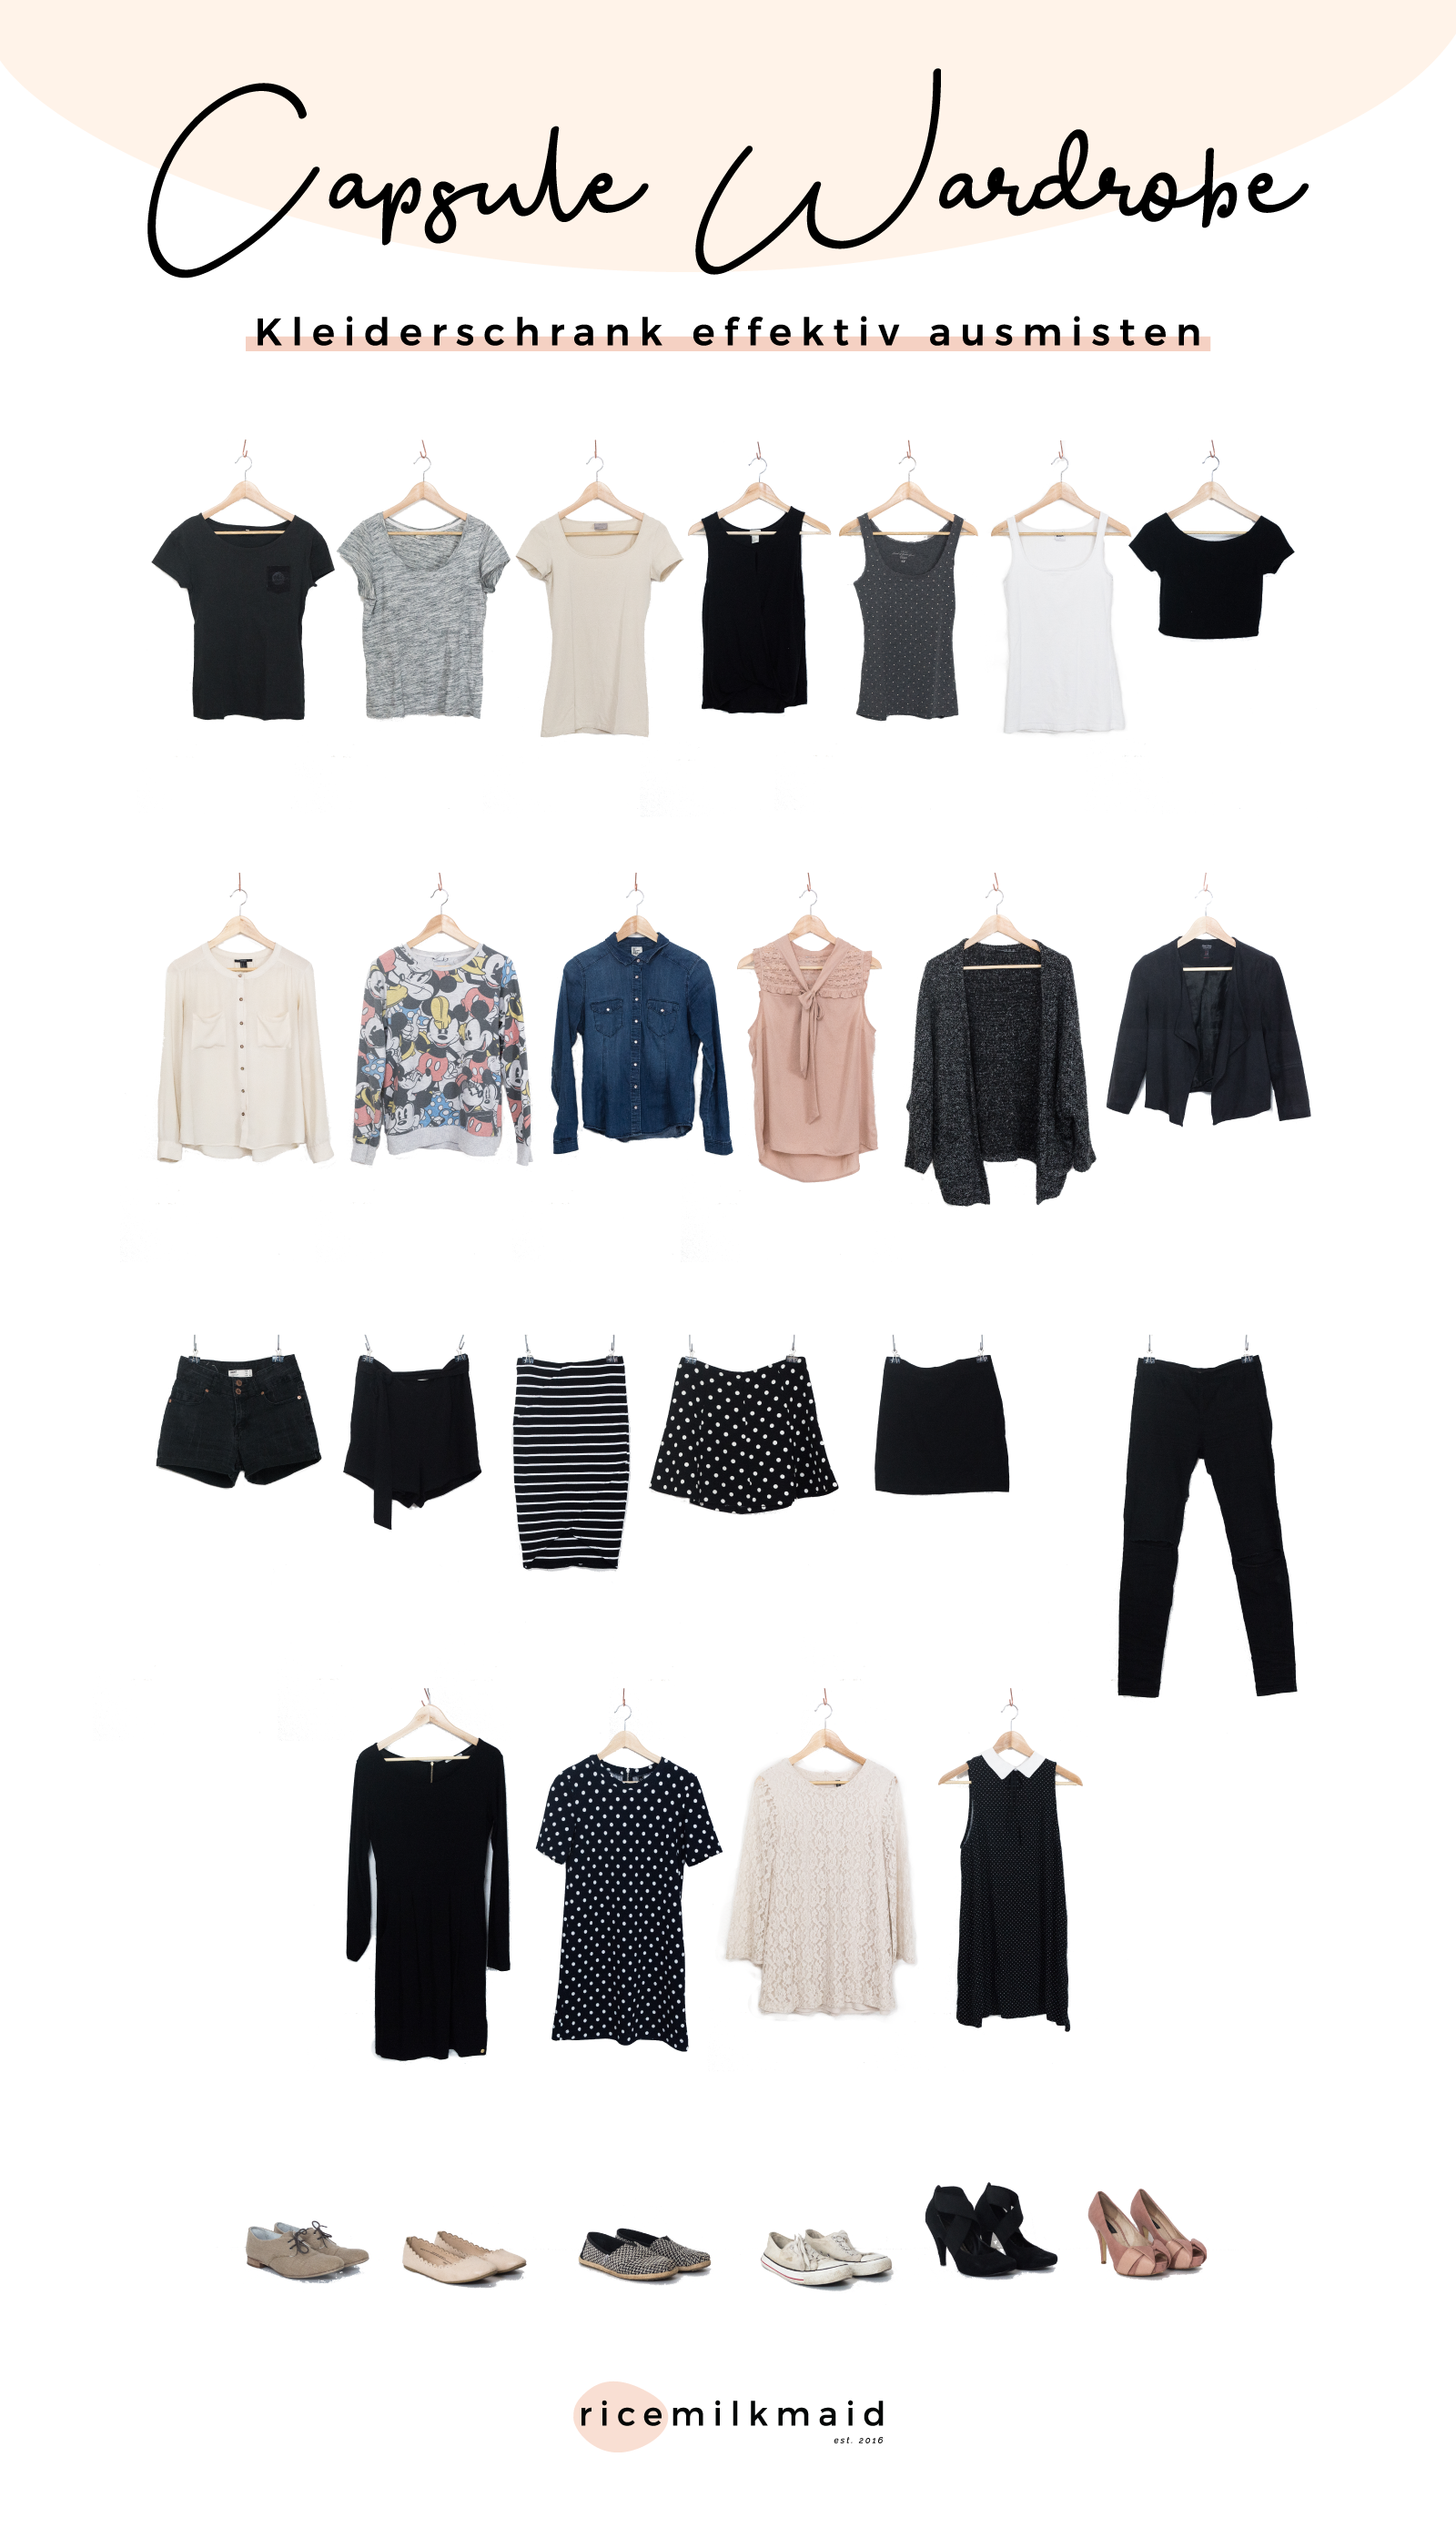 Minimalistische Garderobe: Kleiderschrank ausmisten - ricemilkmaid